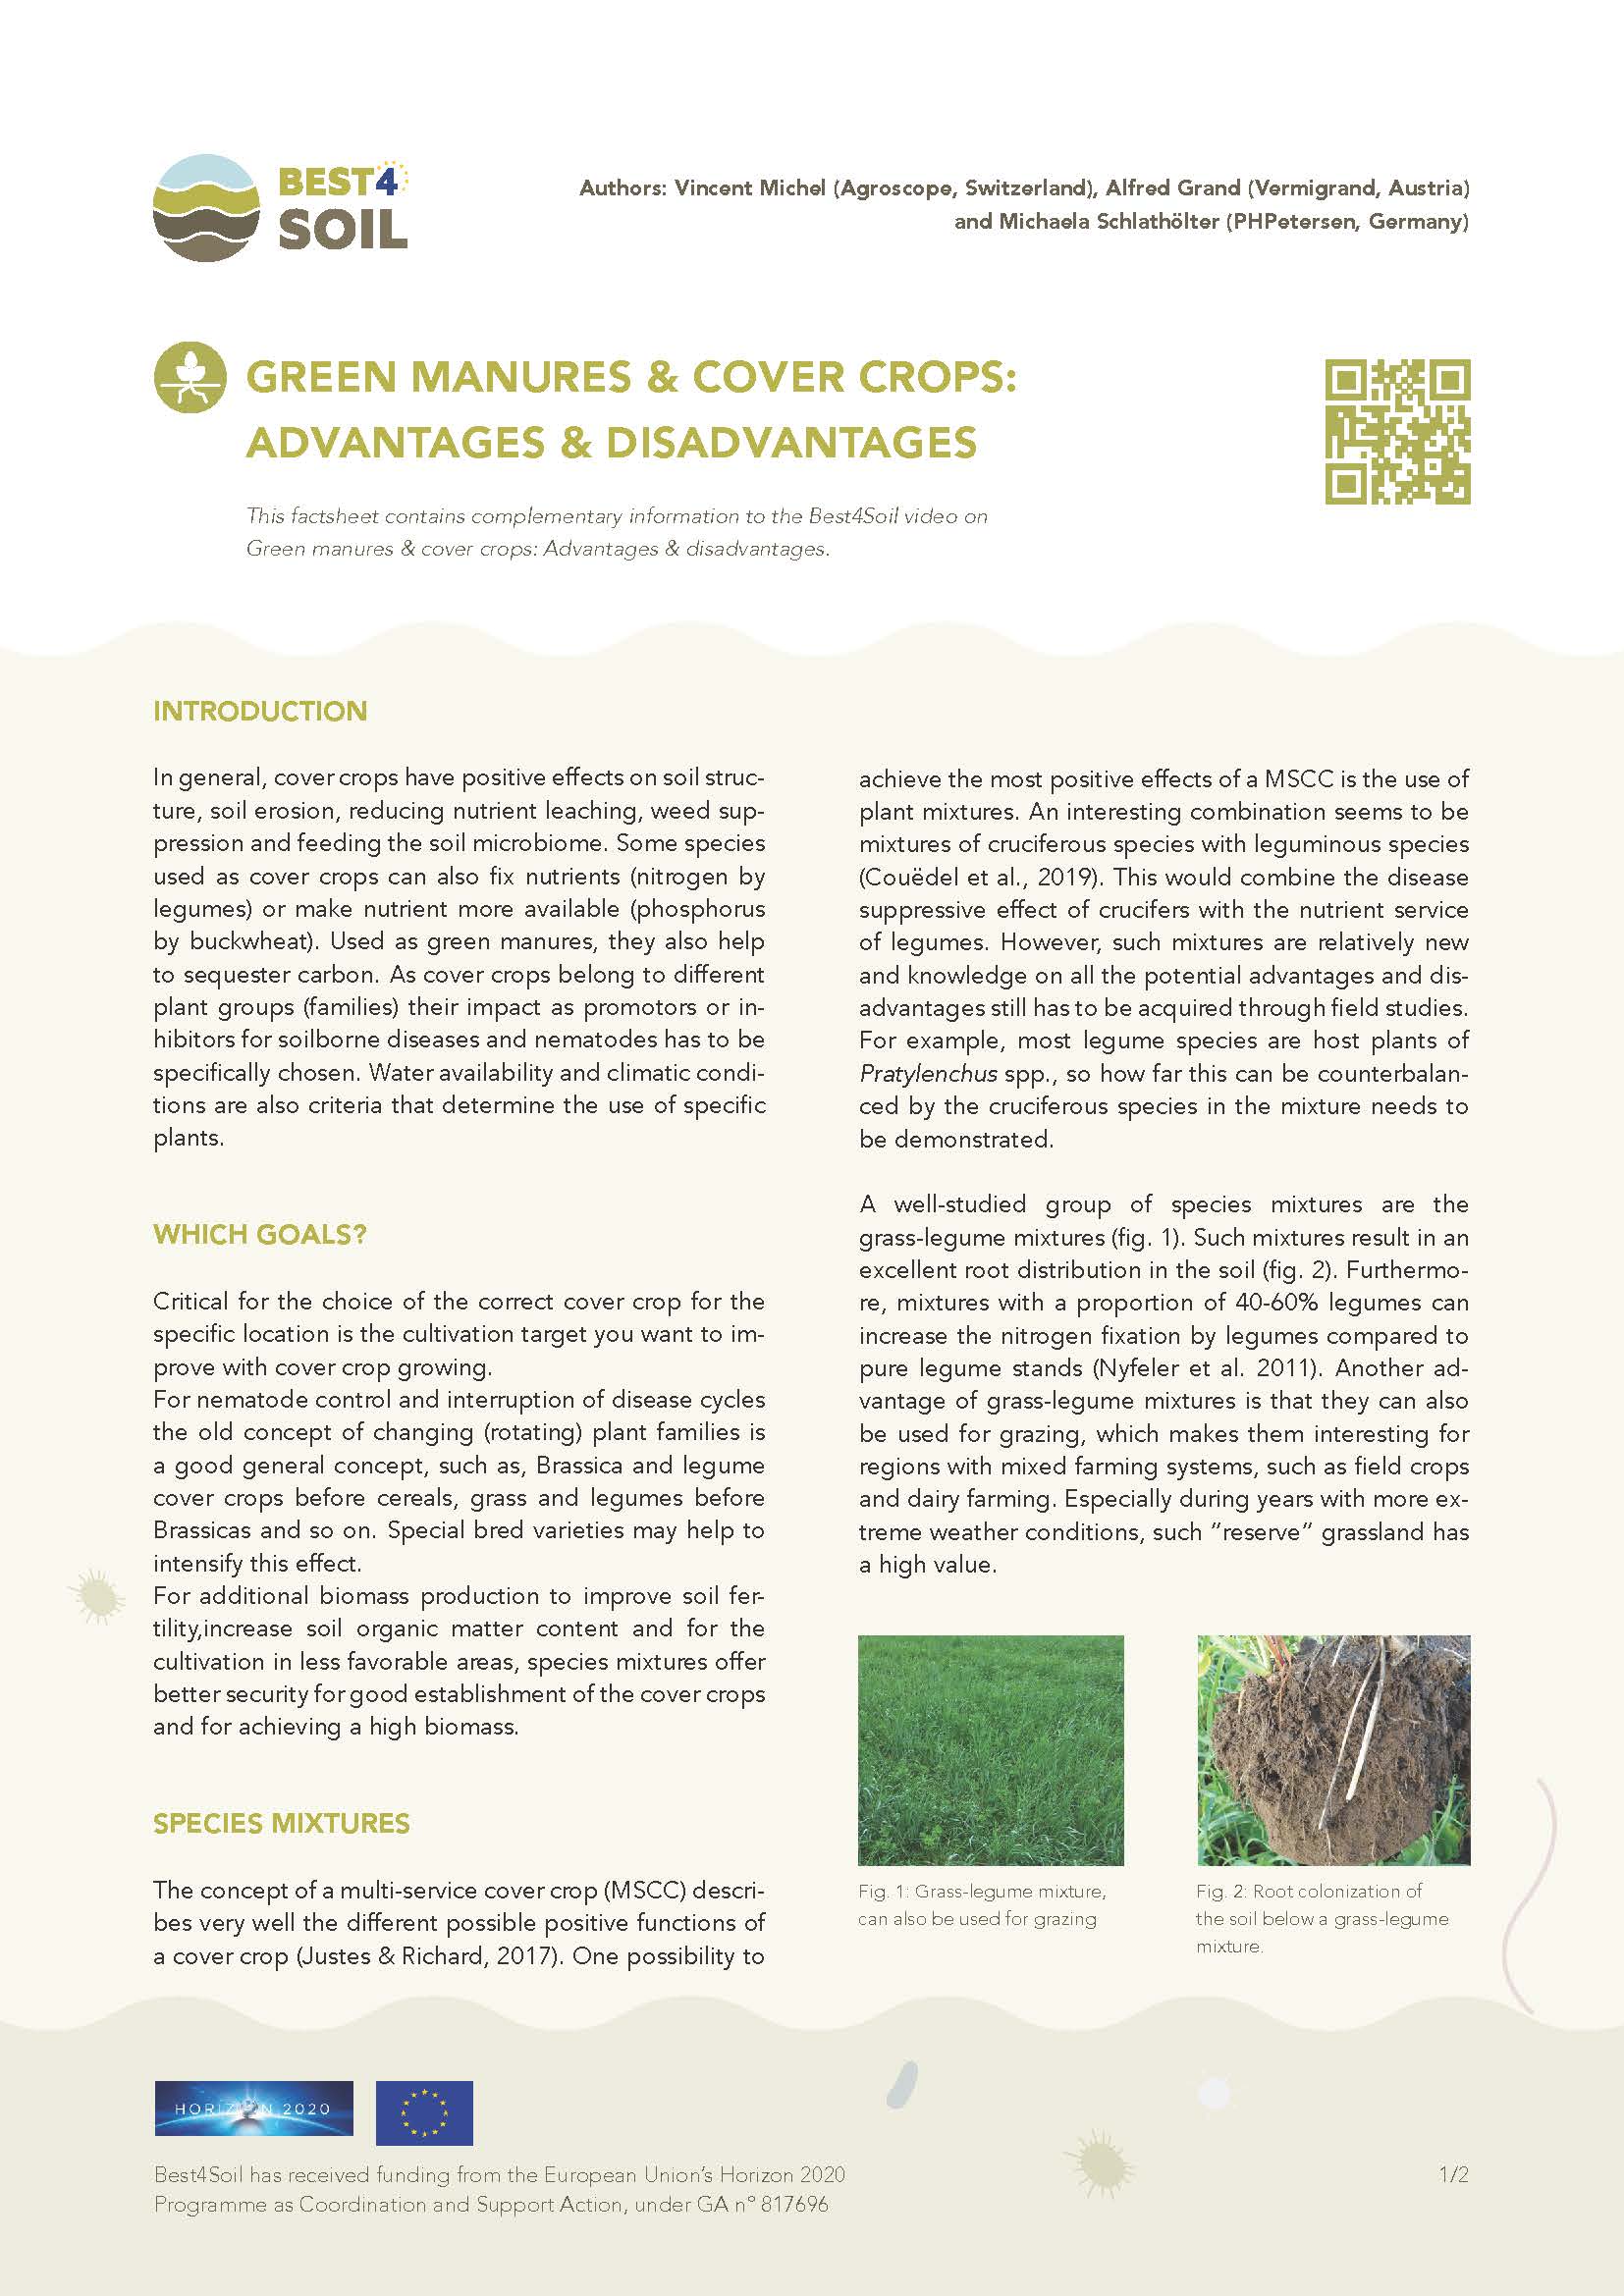 Gröngödsel & täckgrödor: Fördelar & nackdelar (Best4Soil Factsheet)